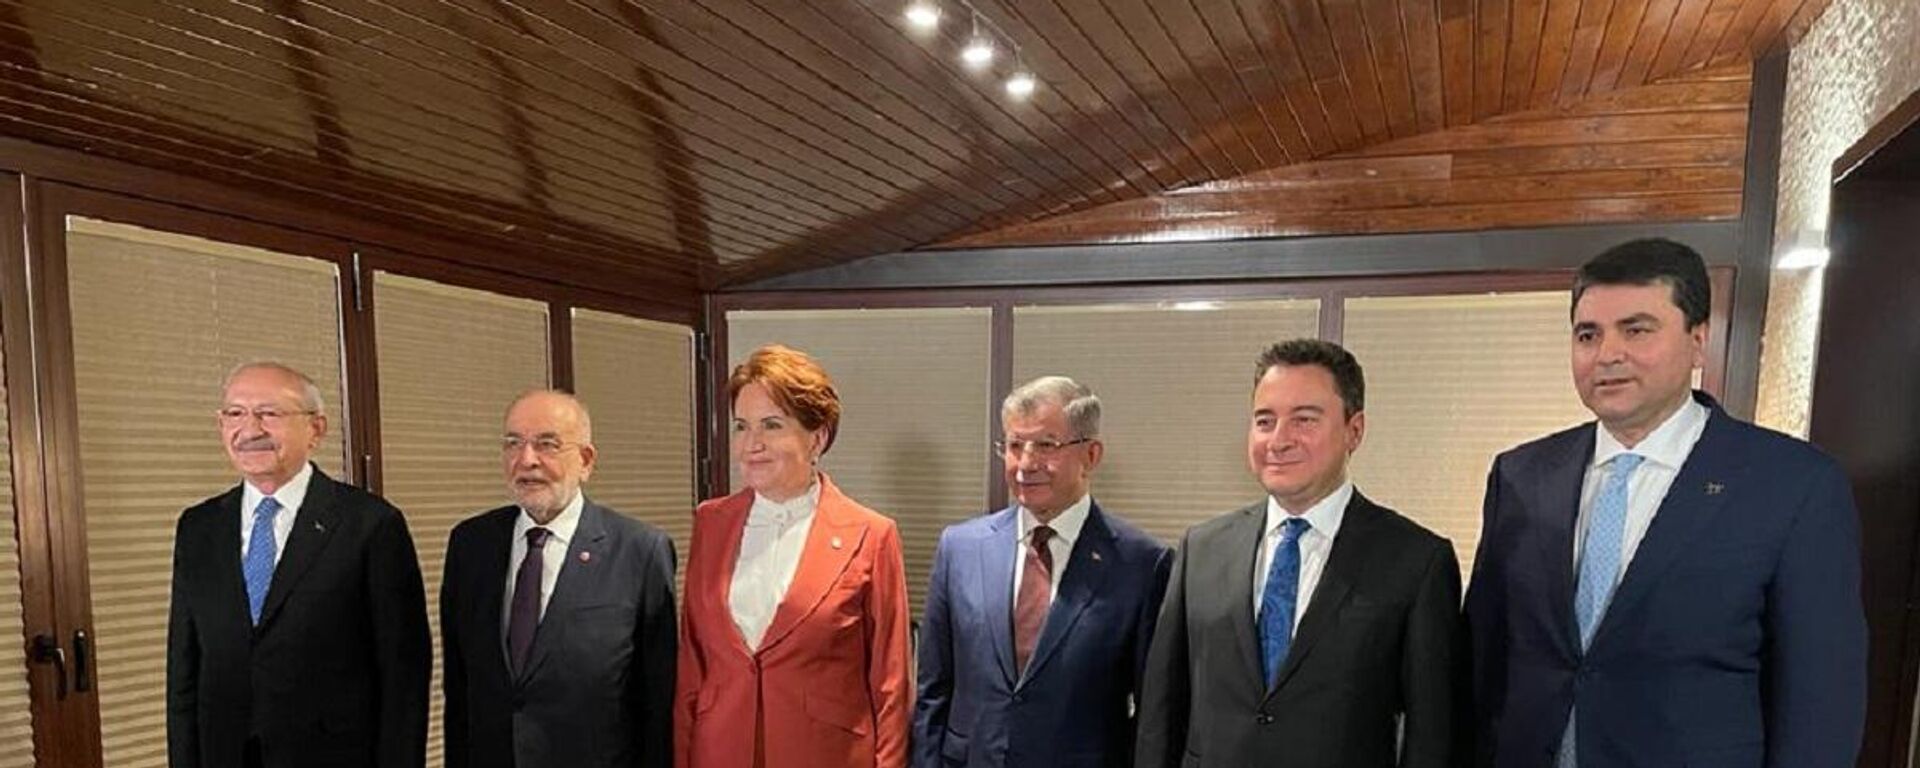 CHP Genel Başkanı Kemal Kılıçdaroğlu'nun daveti ile 6 parti lideri akşam yemeğinde bir araya geldi. - Sputnik Türkiye, 1920, 25.02.2022